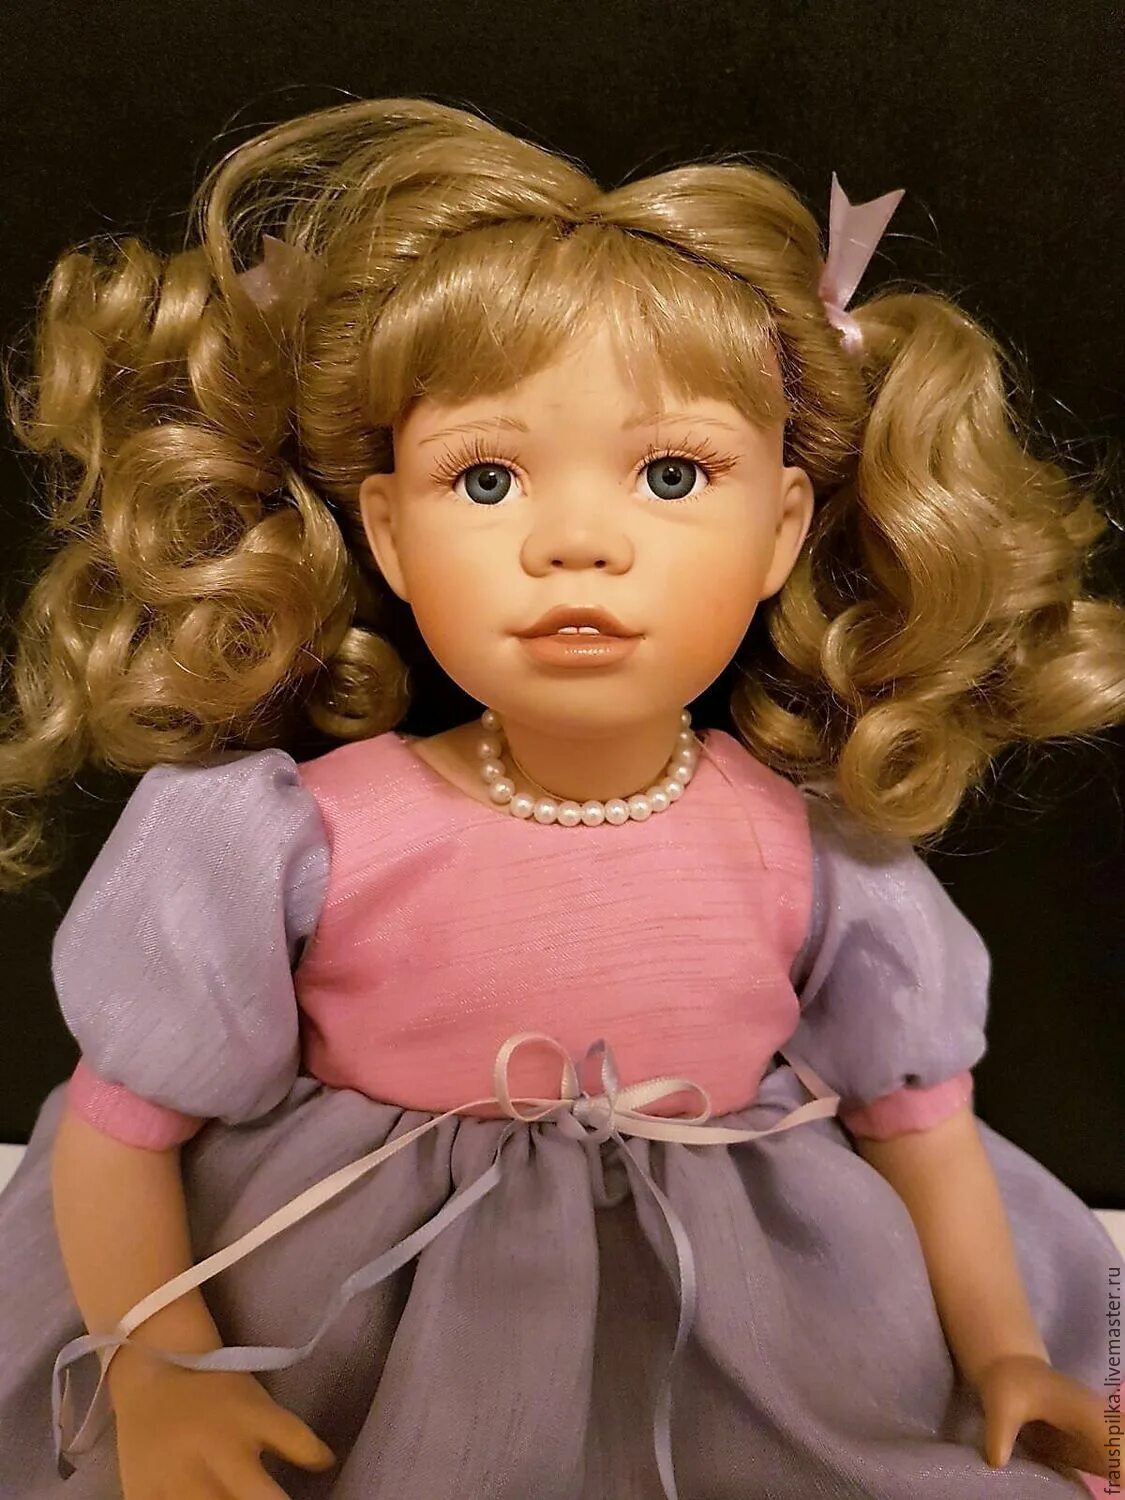 Christine collection. Кристин оранж фарфоровые куклы. Фарфоровая кукла от Кристины оранж. Кукла Кристин оранж океан. Кристин оранж фарфоровые куклы в берете.